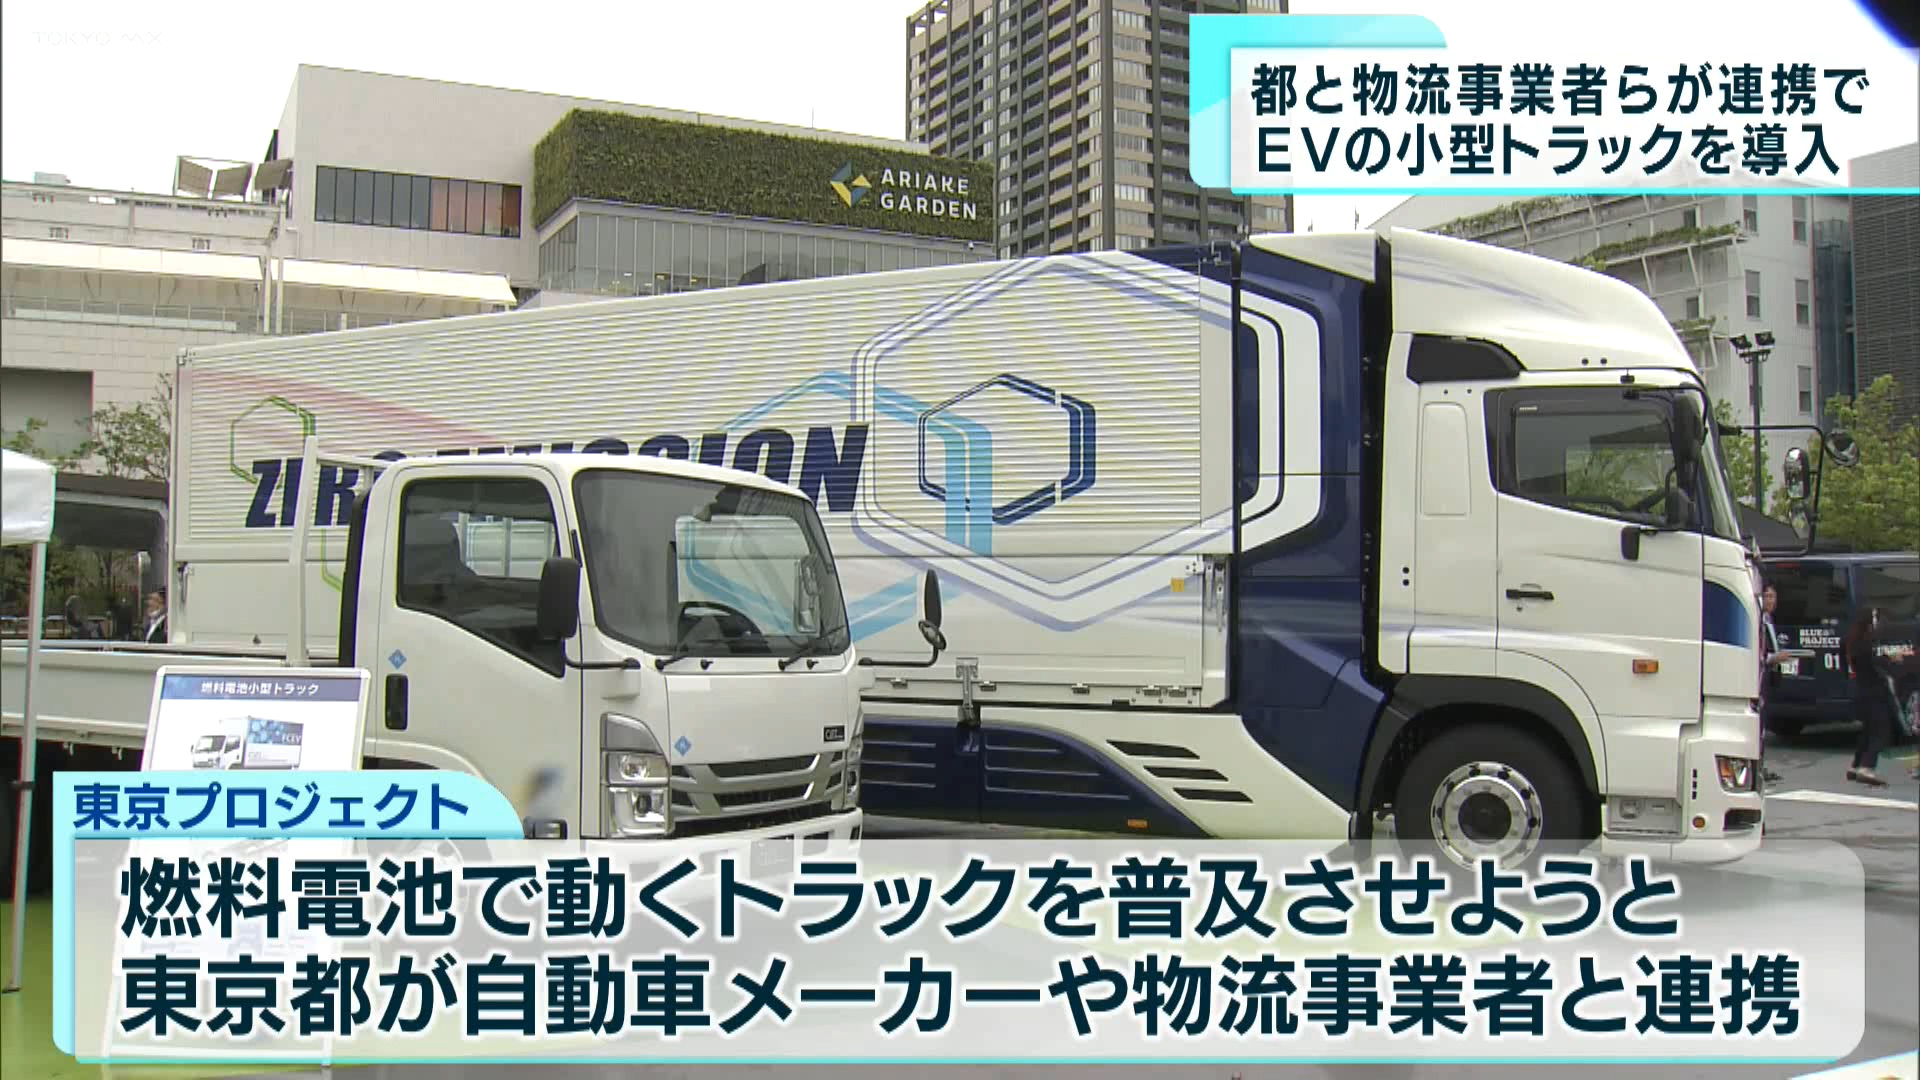 東京都と物流事業者らが連携し、燃料電池を活用した小型トラックの導入が始まりました。取り組みを通して、脱炭素化の促進を目指します。
